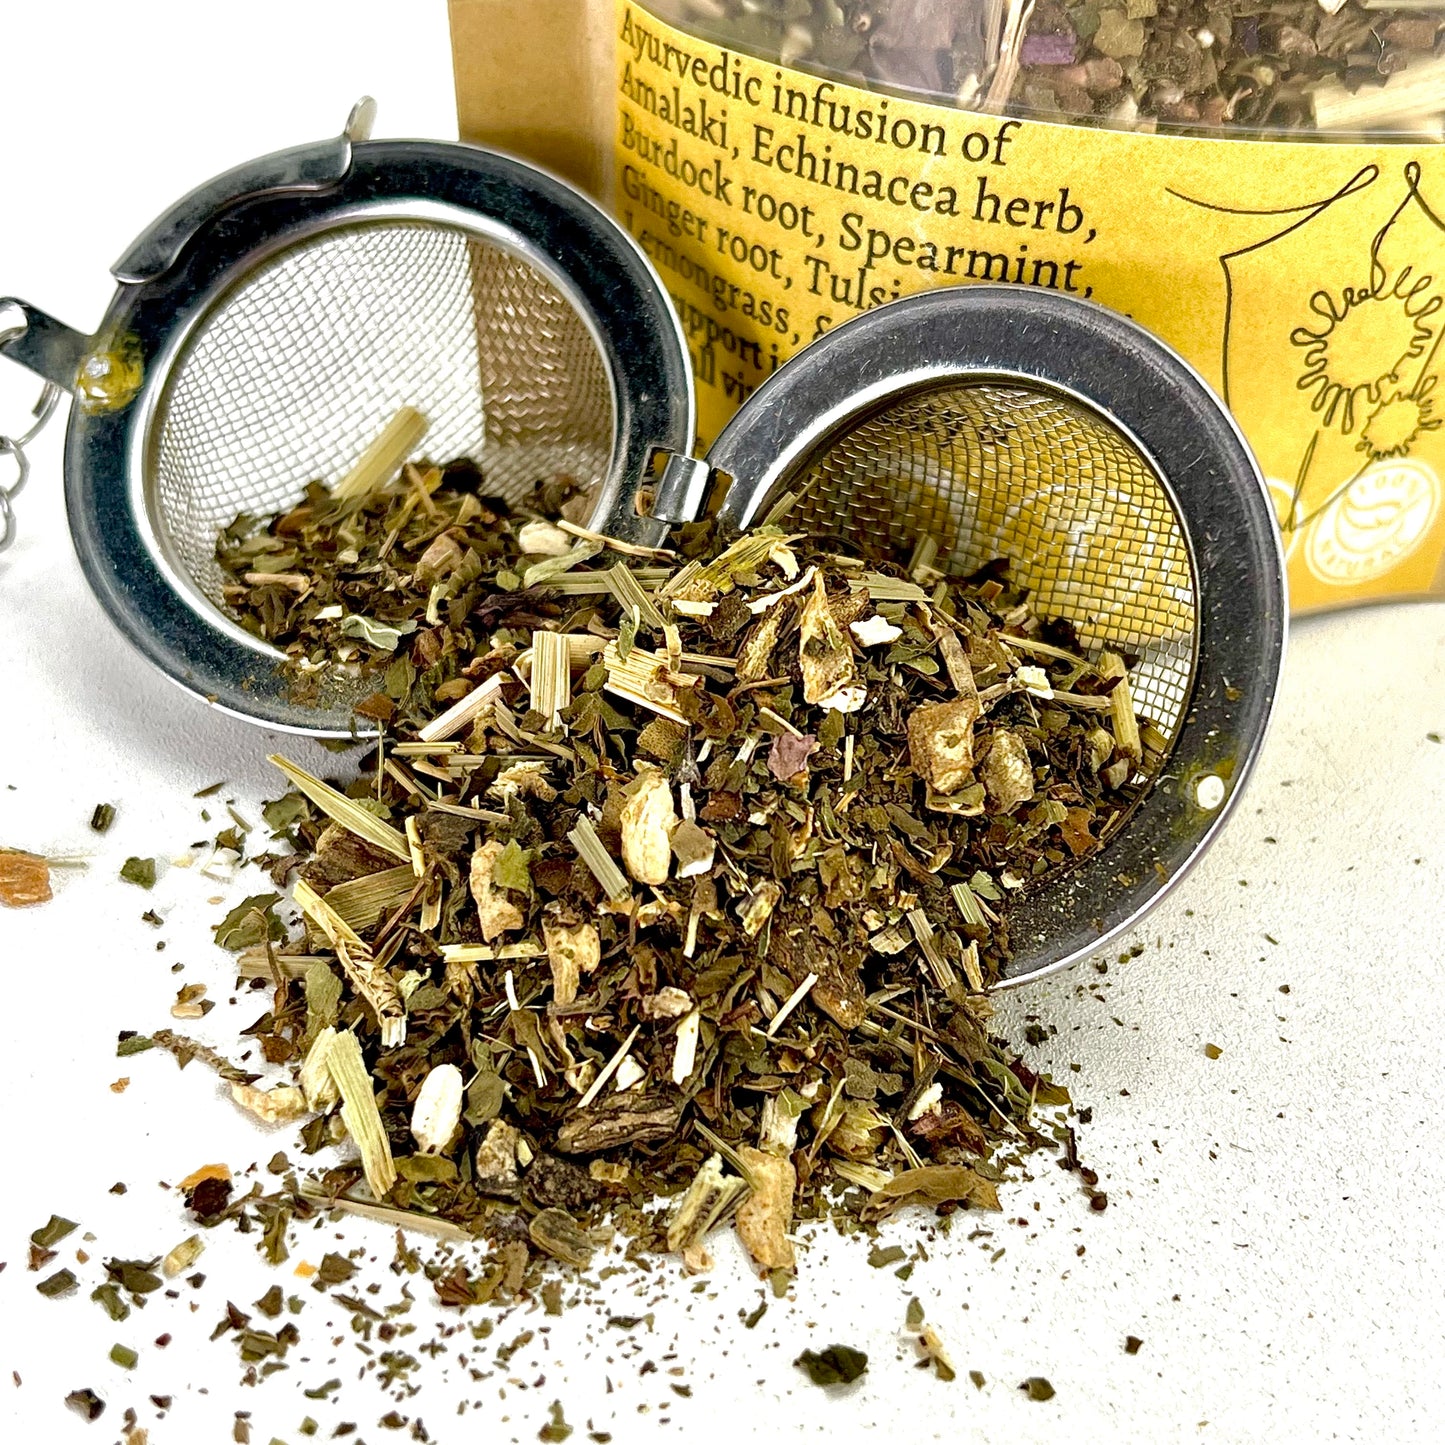 A loose leaf tea blend of Burdock root, Spearmint, Ginger root, Tulsi, Guduchi, Lemongrass, & Ashwagandha in an open tea ball